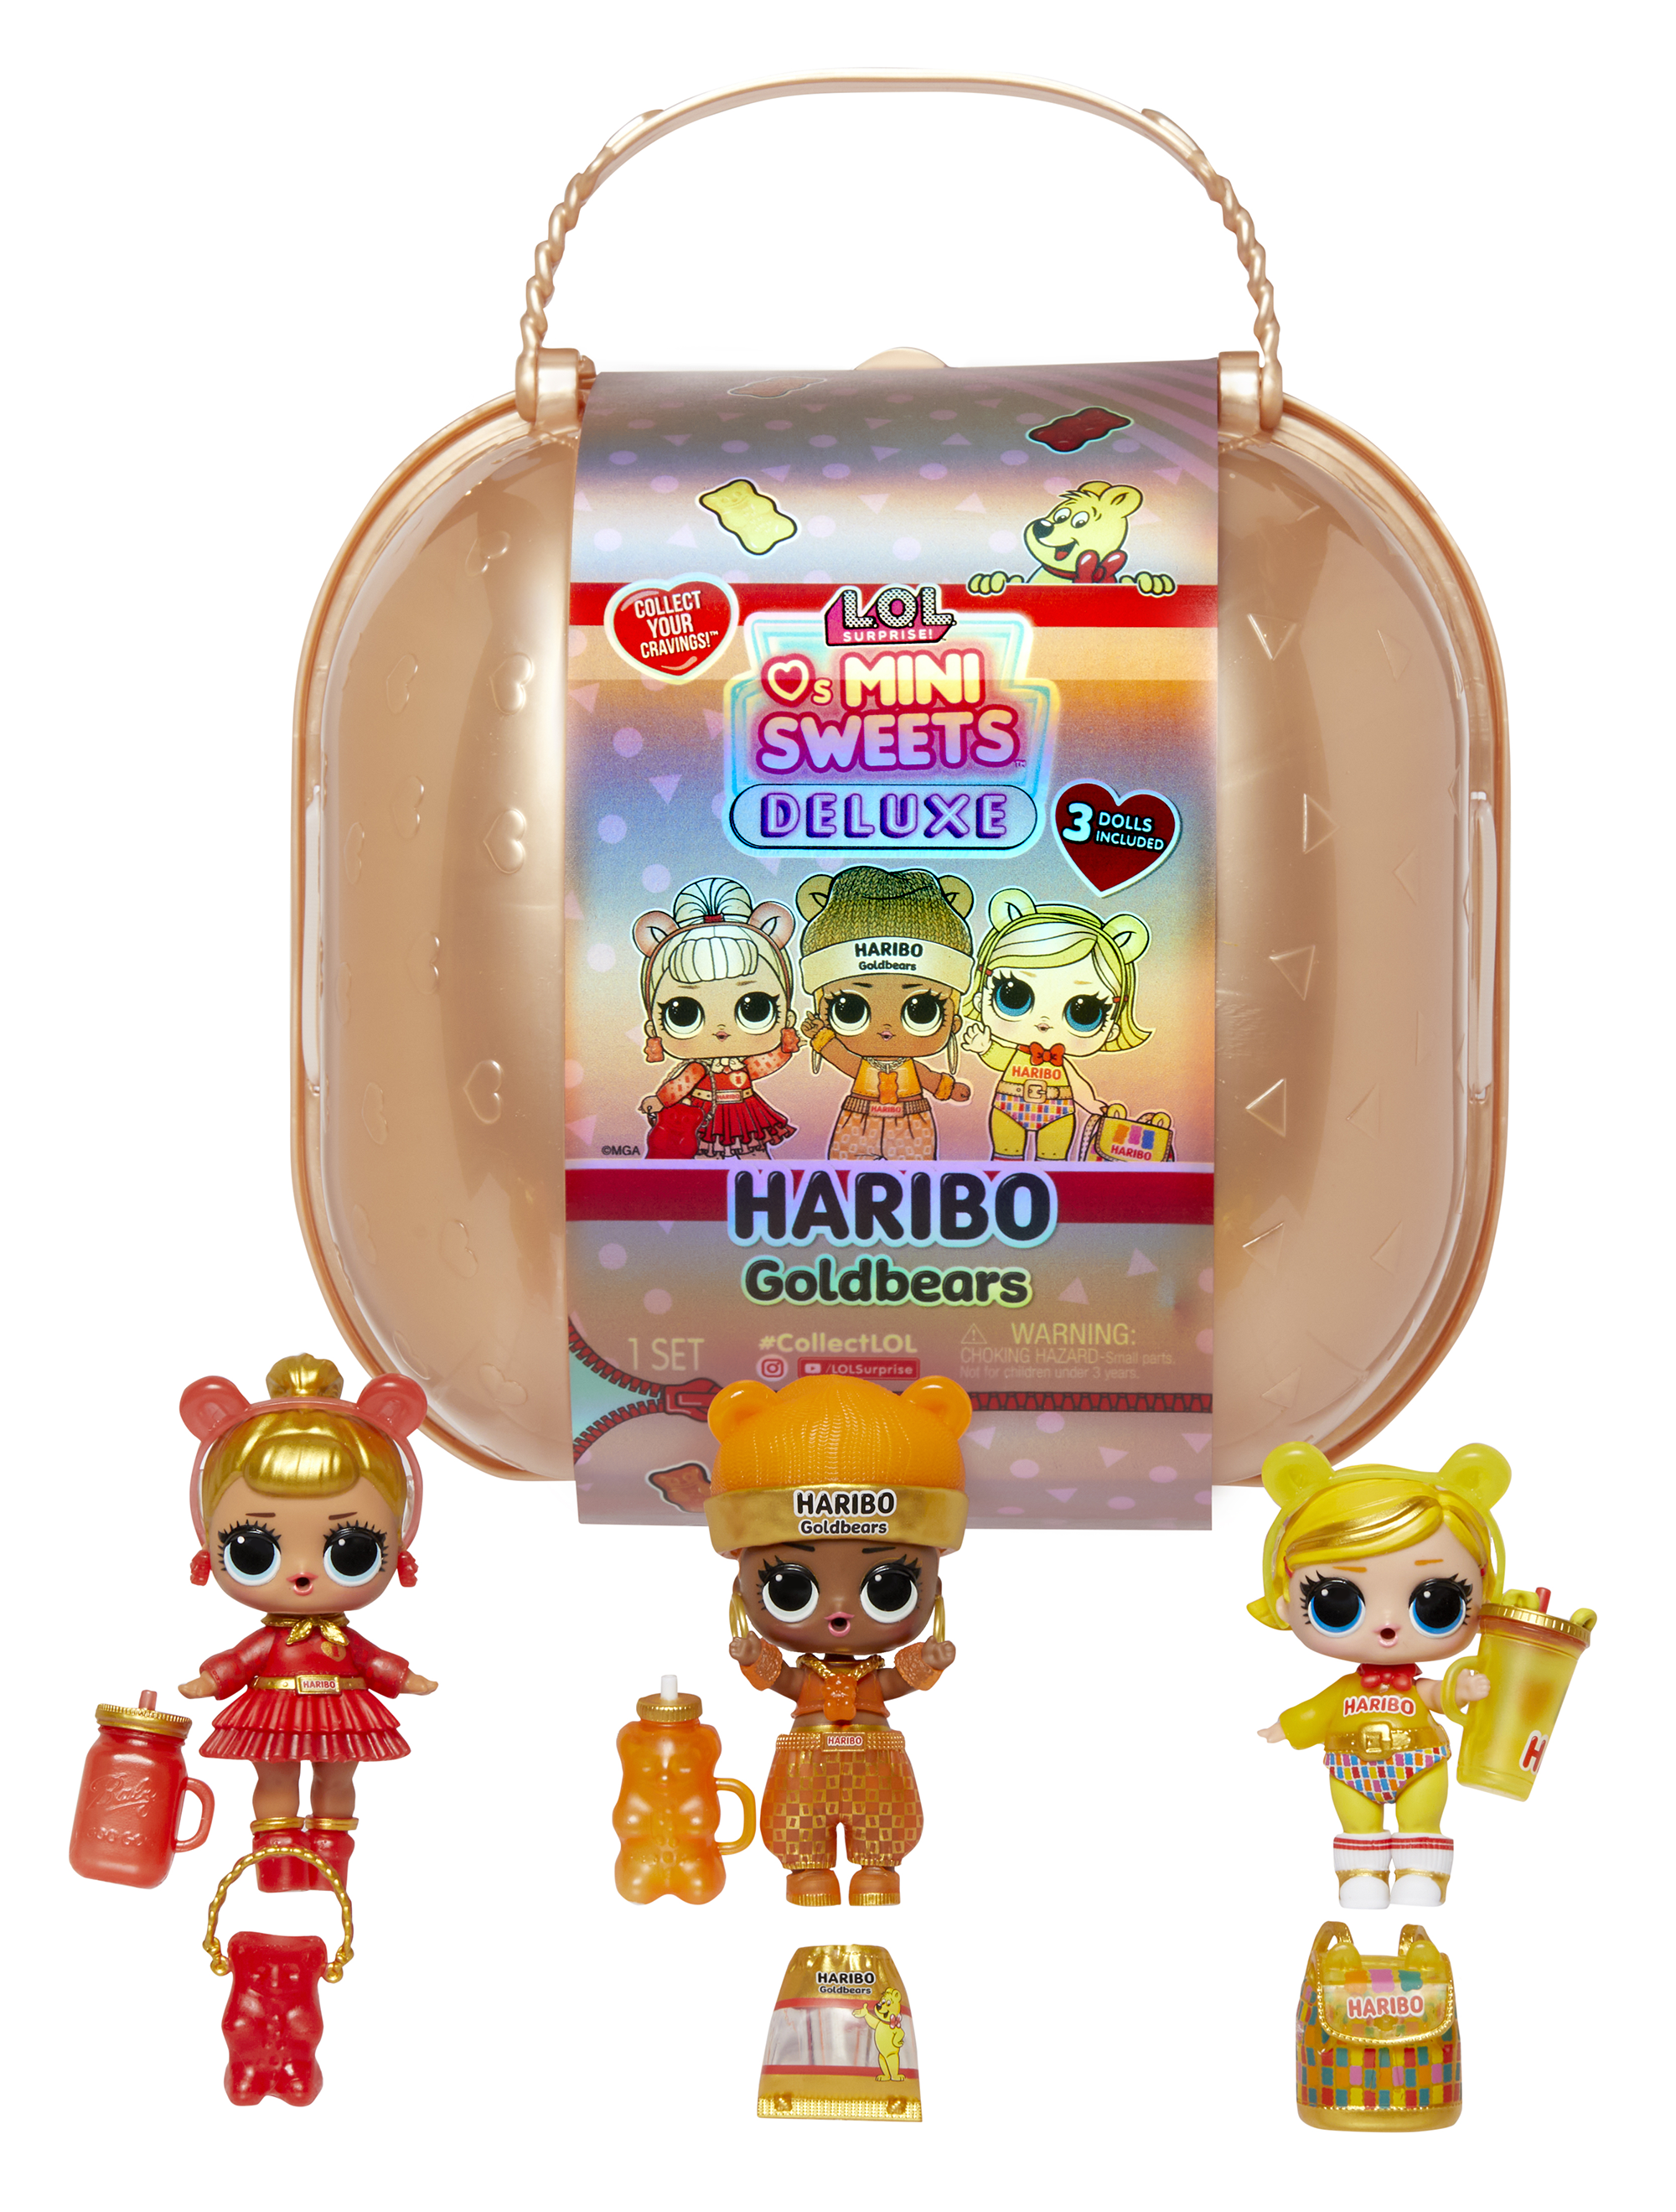 Lol surprise loves mini sweets deluxe x haribo - goldbears - include 3 bambole a tema caramelle, accessori divertenti e sorprese d’acqua - LOL